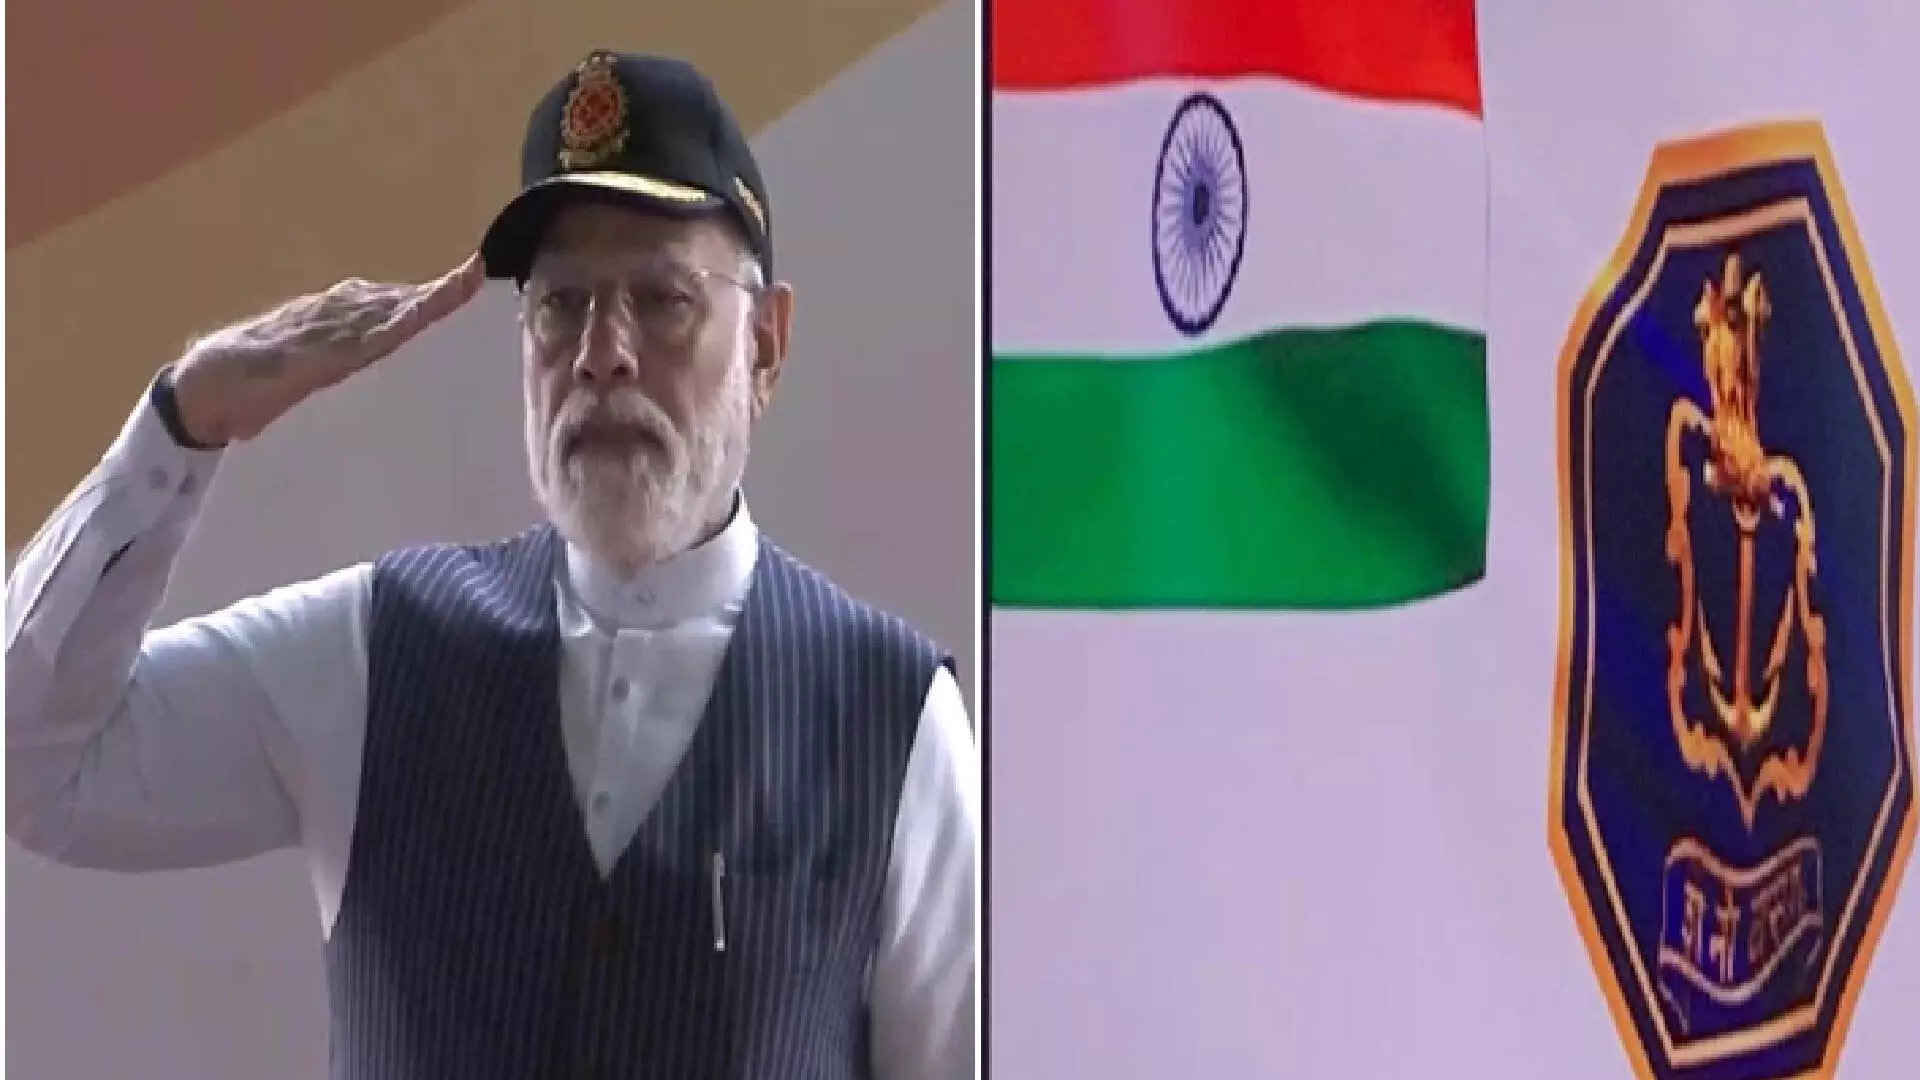 PM Modi - छत्रपती शिवाजी महाराजांच्या प्रेरणेतून नौदलाचा नवा ध्वज